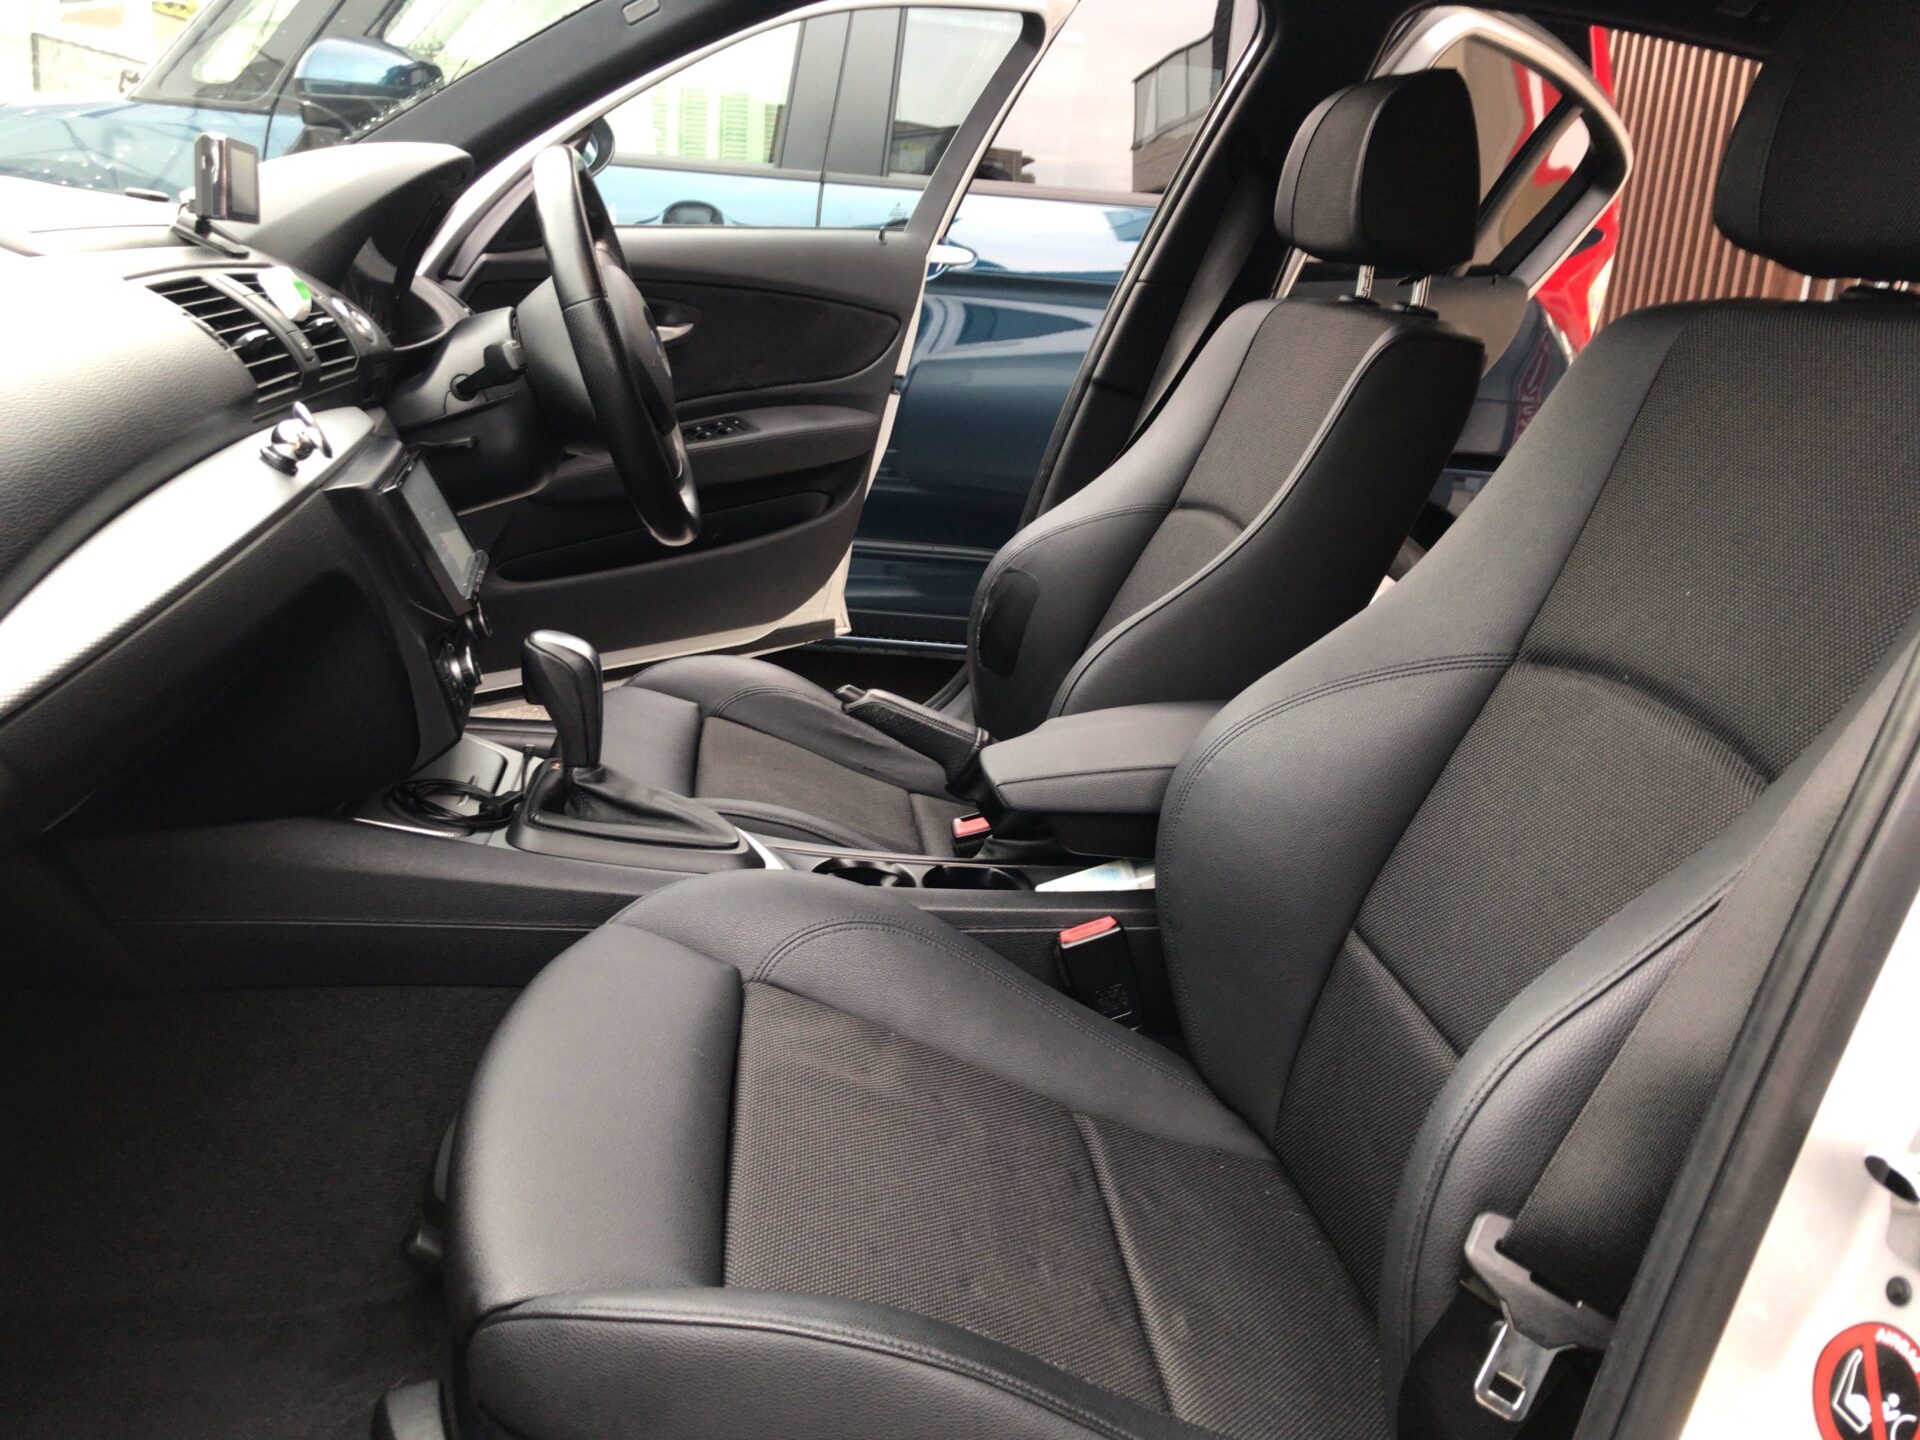 【装着写真】BMW 1シリーズ Refinad Leather Series シートカバー [品番:BM0188-04]